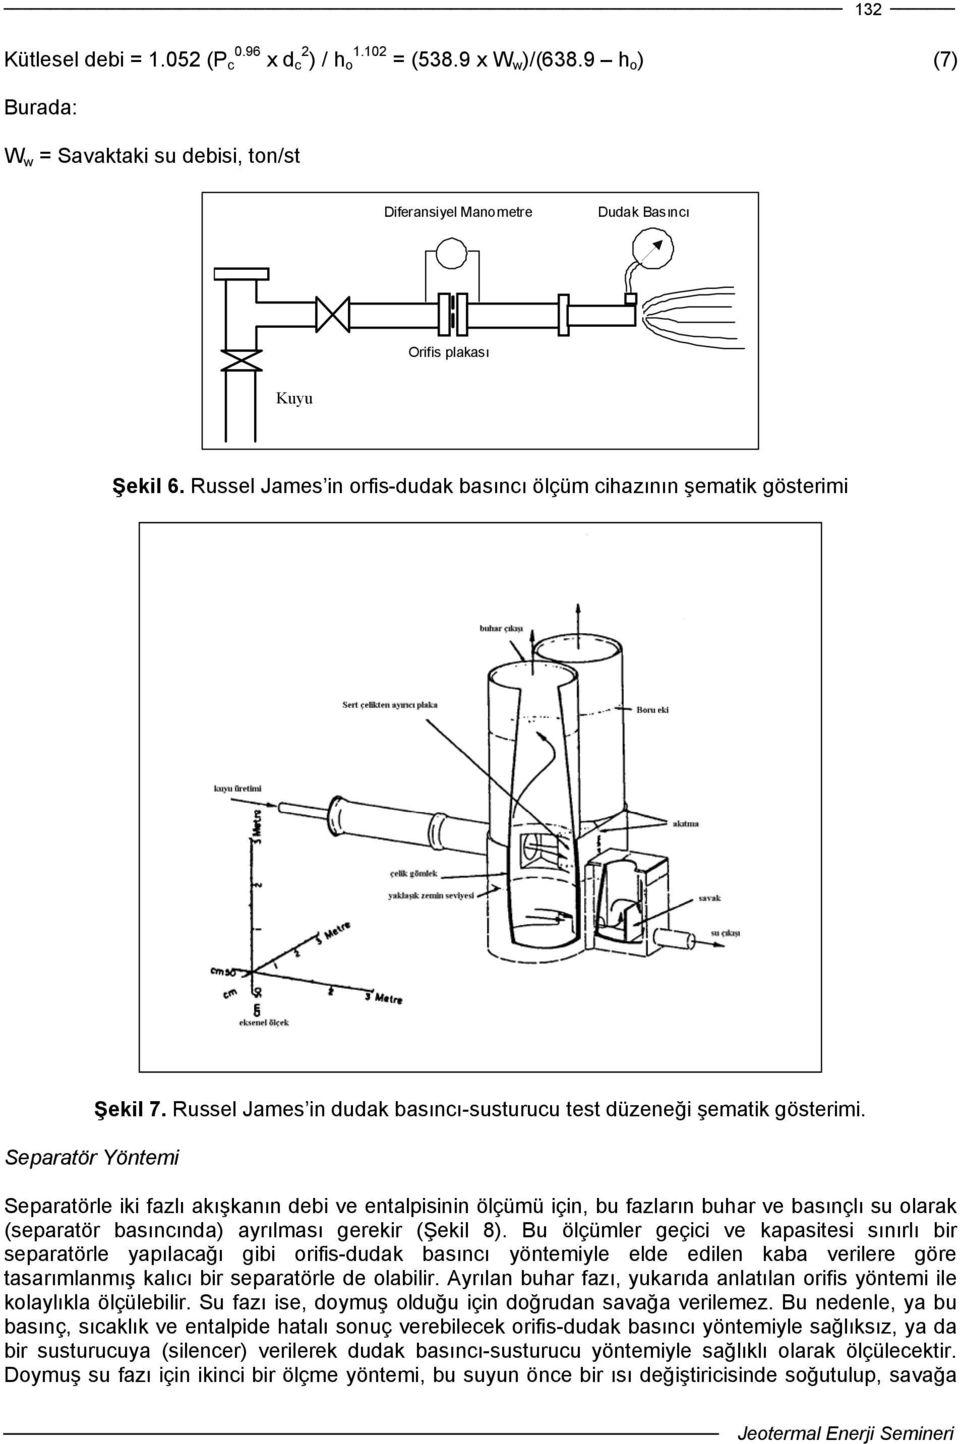 Separatörle iki fazlı akışkanın debi ve entalpisinin ölçümü için, bu fazların buhar ve basınçlı su olarak (separatör basıncında) ayrılması gerekir (Şekil 8).